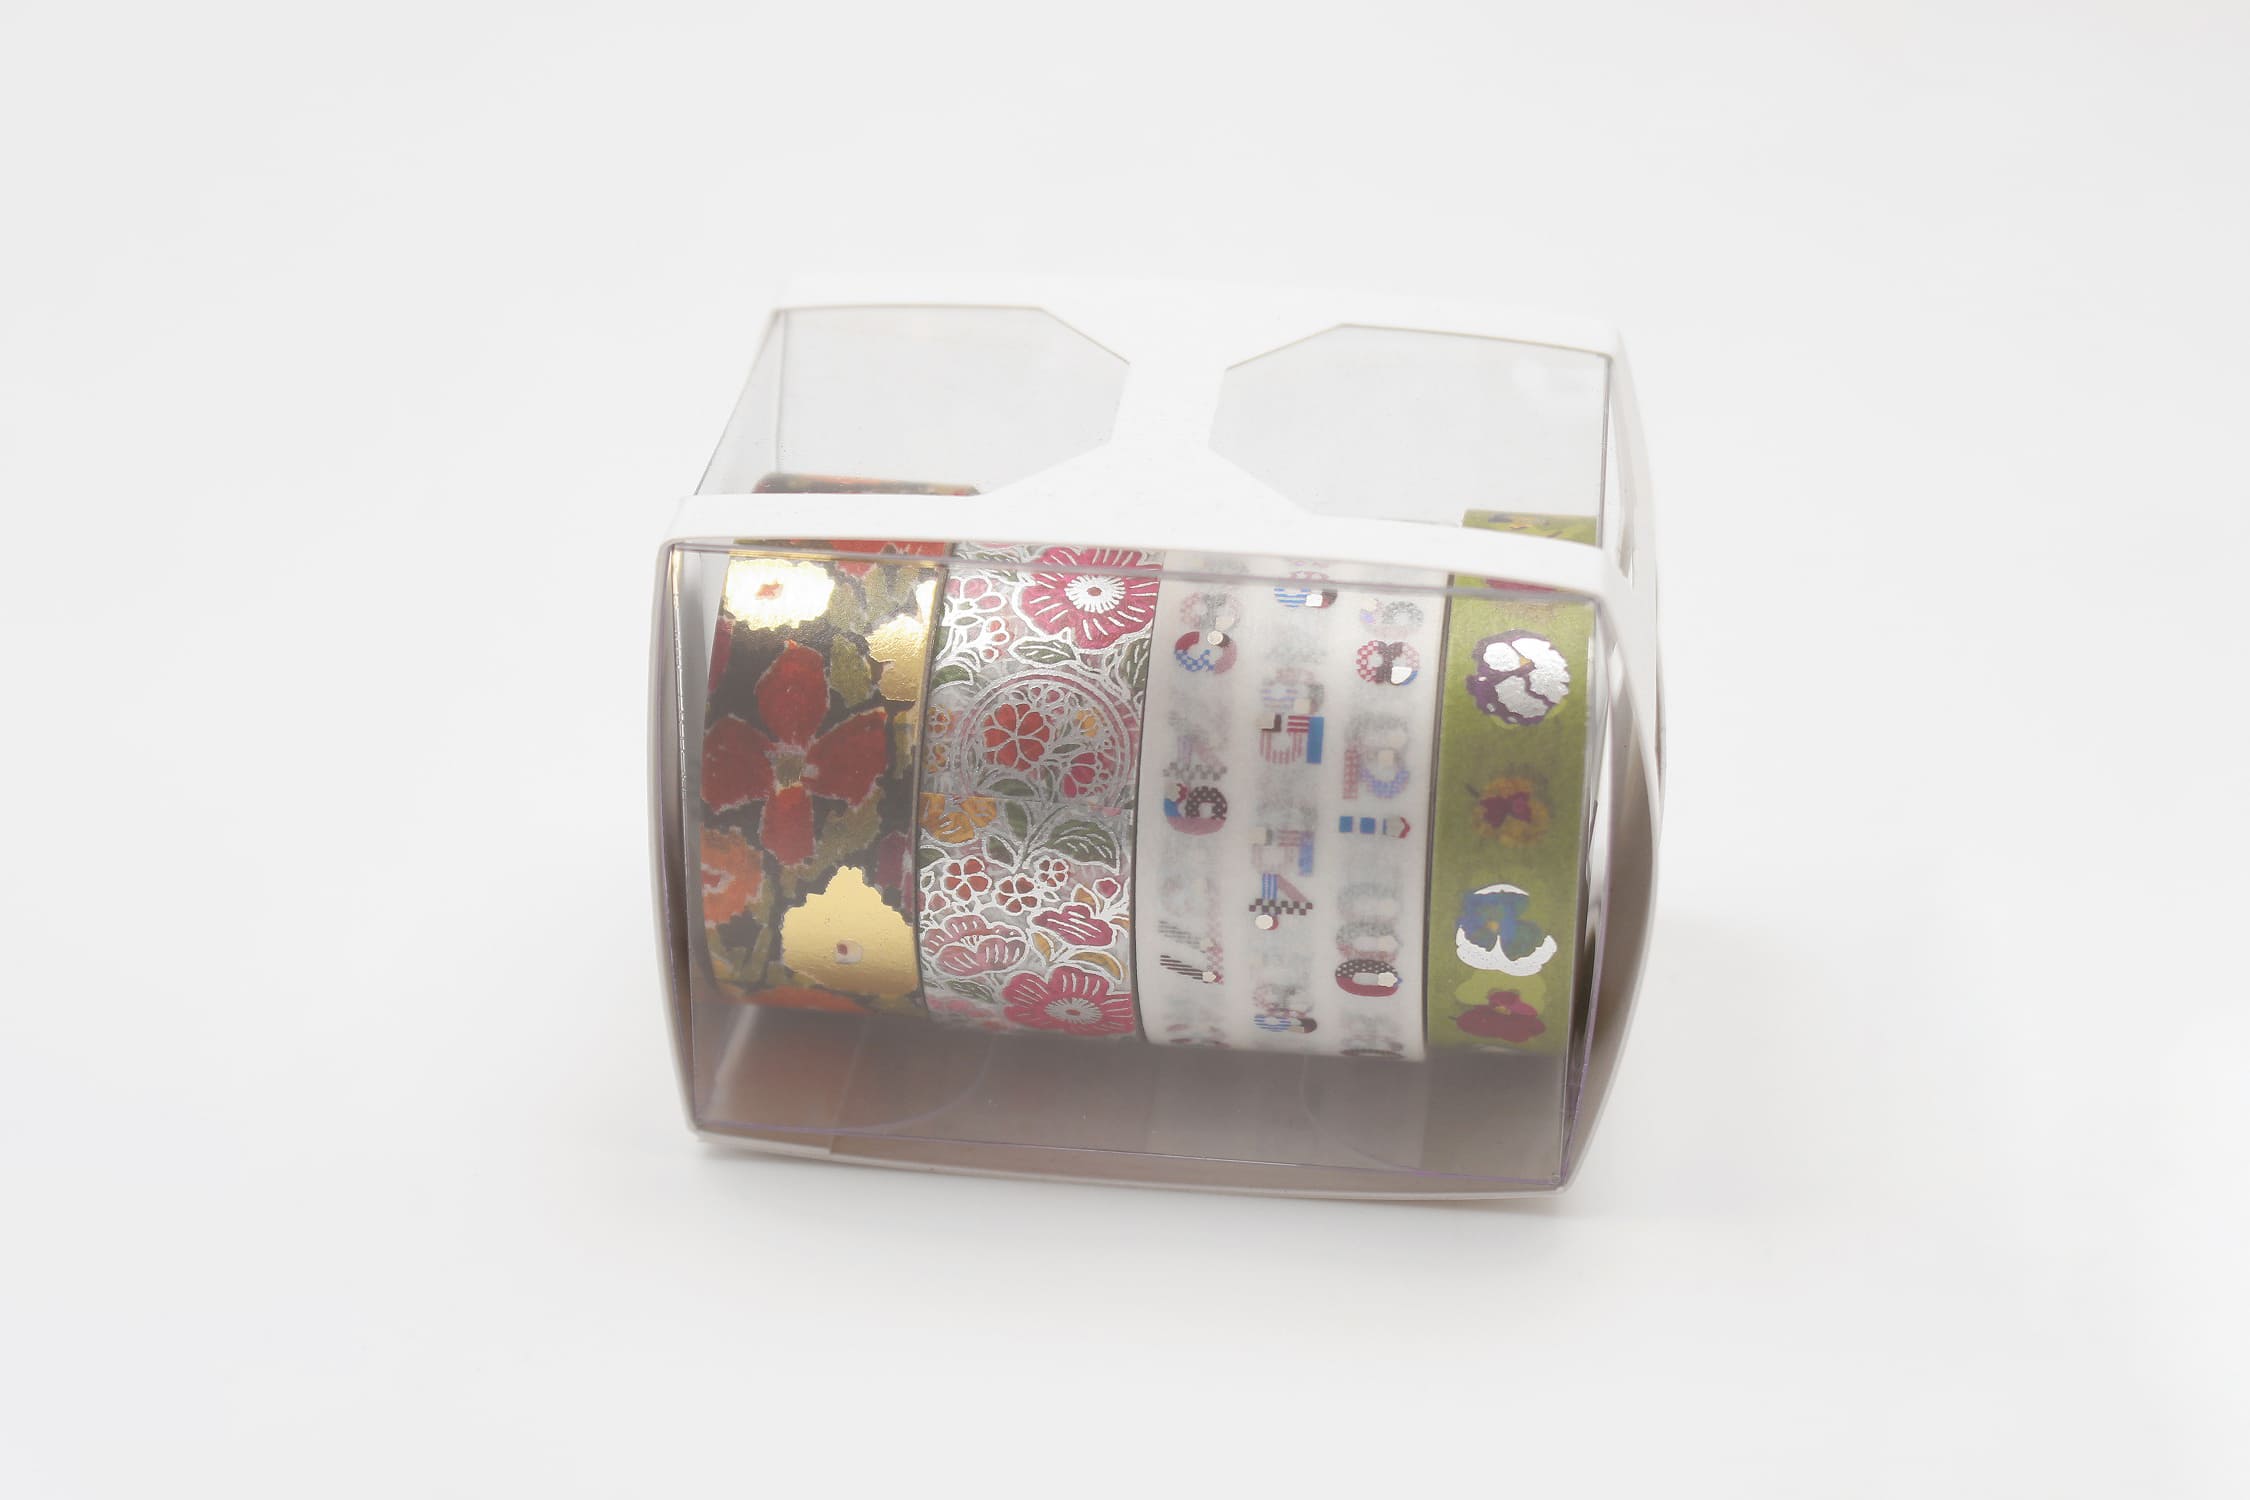 mt Gift Box set of 4 - SOU.SOU 100th Anniversary Set - Washi Tape